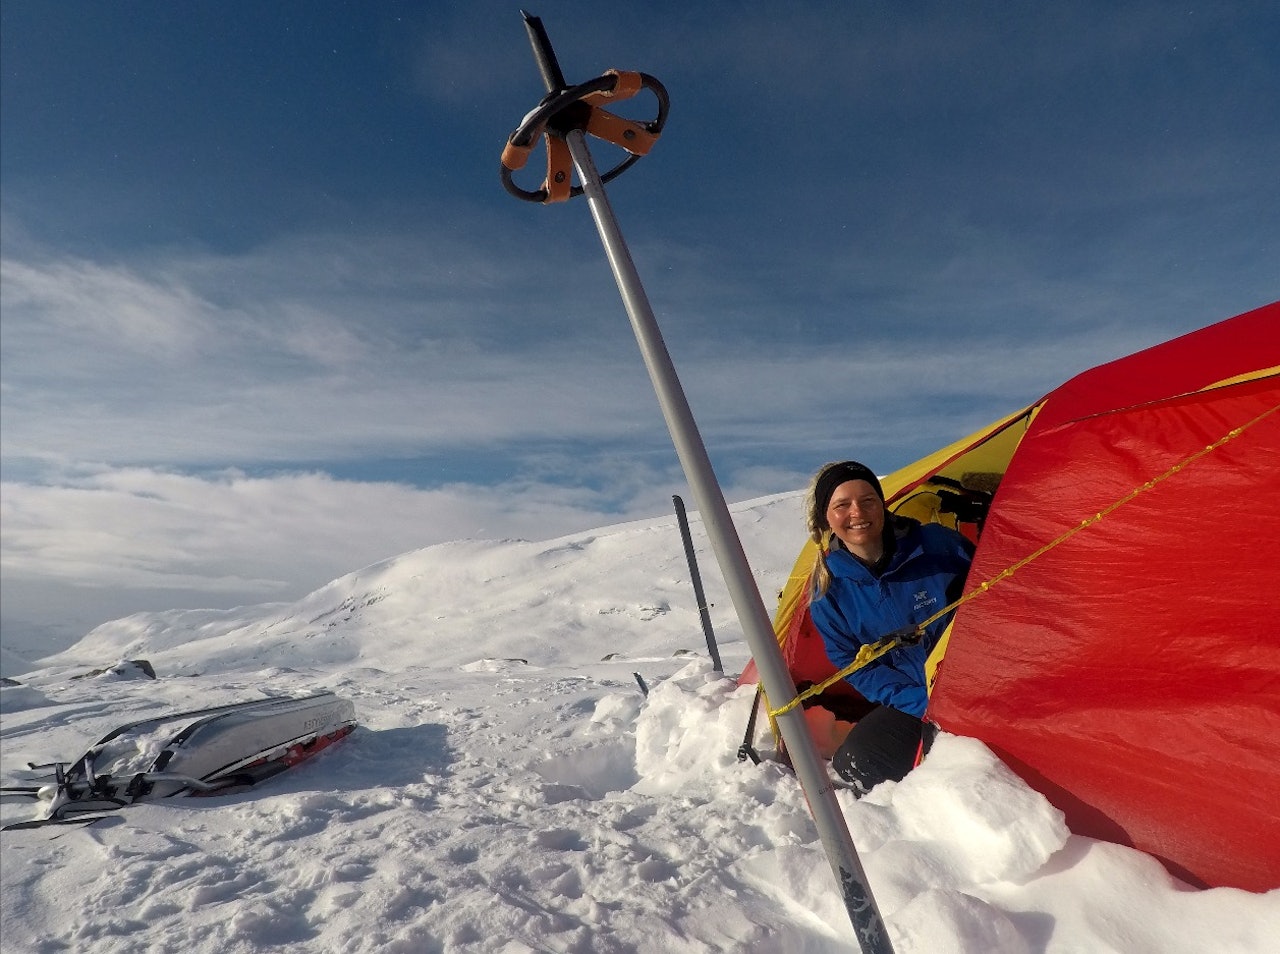 MASSIV TUR: Jeg valgte å starte på Hardangervidda, i motsetning til de fleste som går denne turen, for å unngå å bli solbrent i fjeset, og bli bedre kjent med Nord-Europas største høyfjellsplatå. Foto: Pia Marie Arnesen